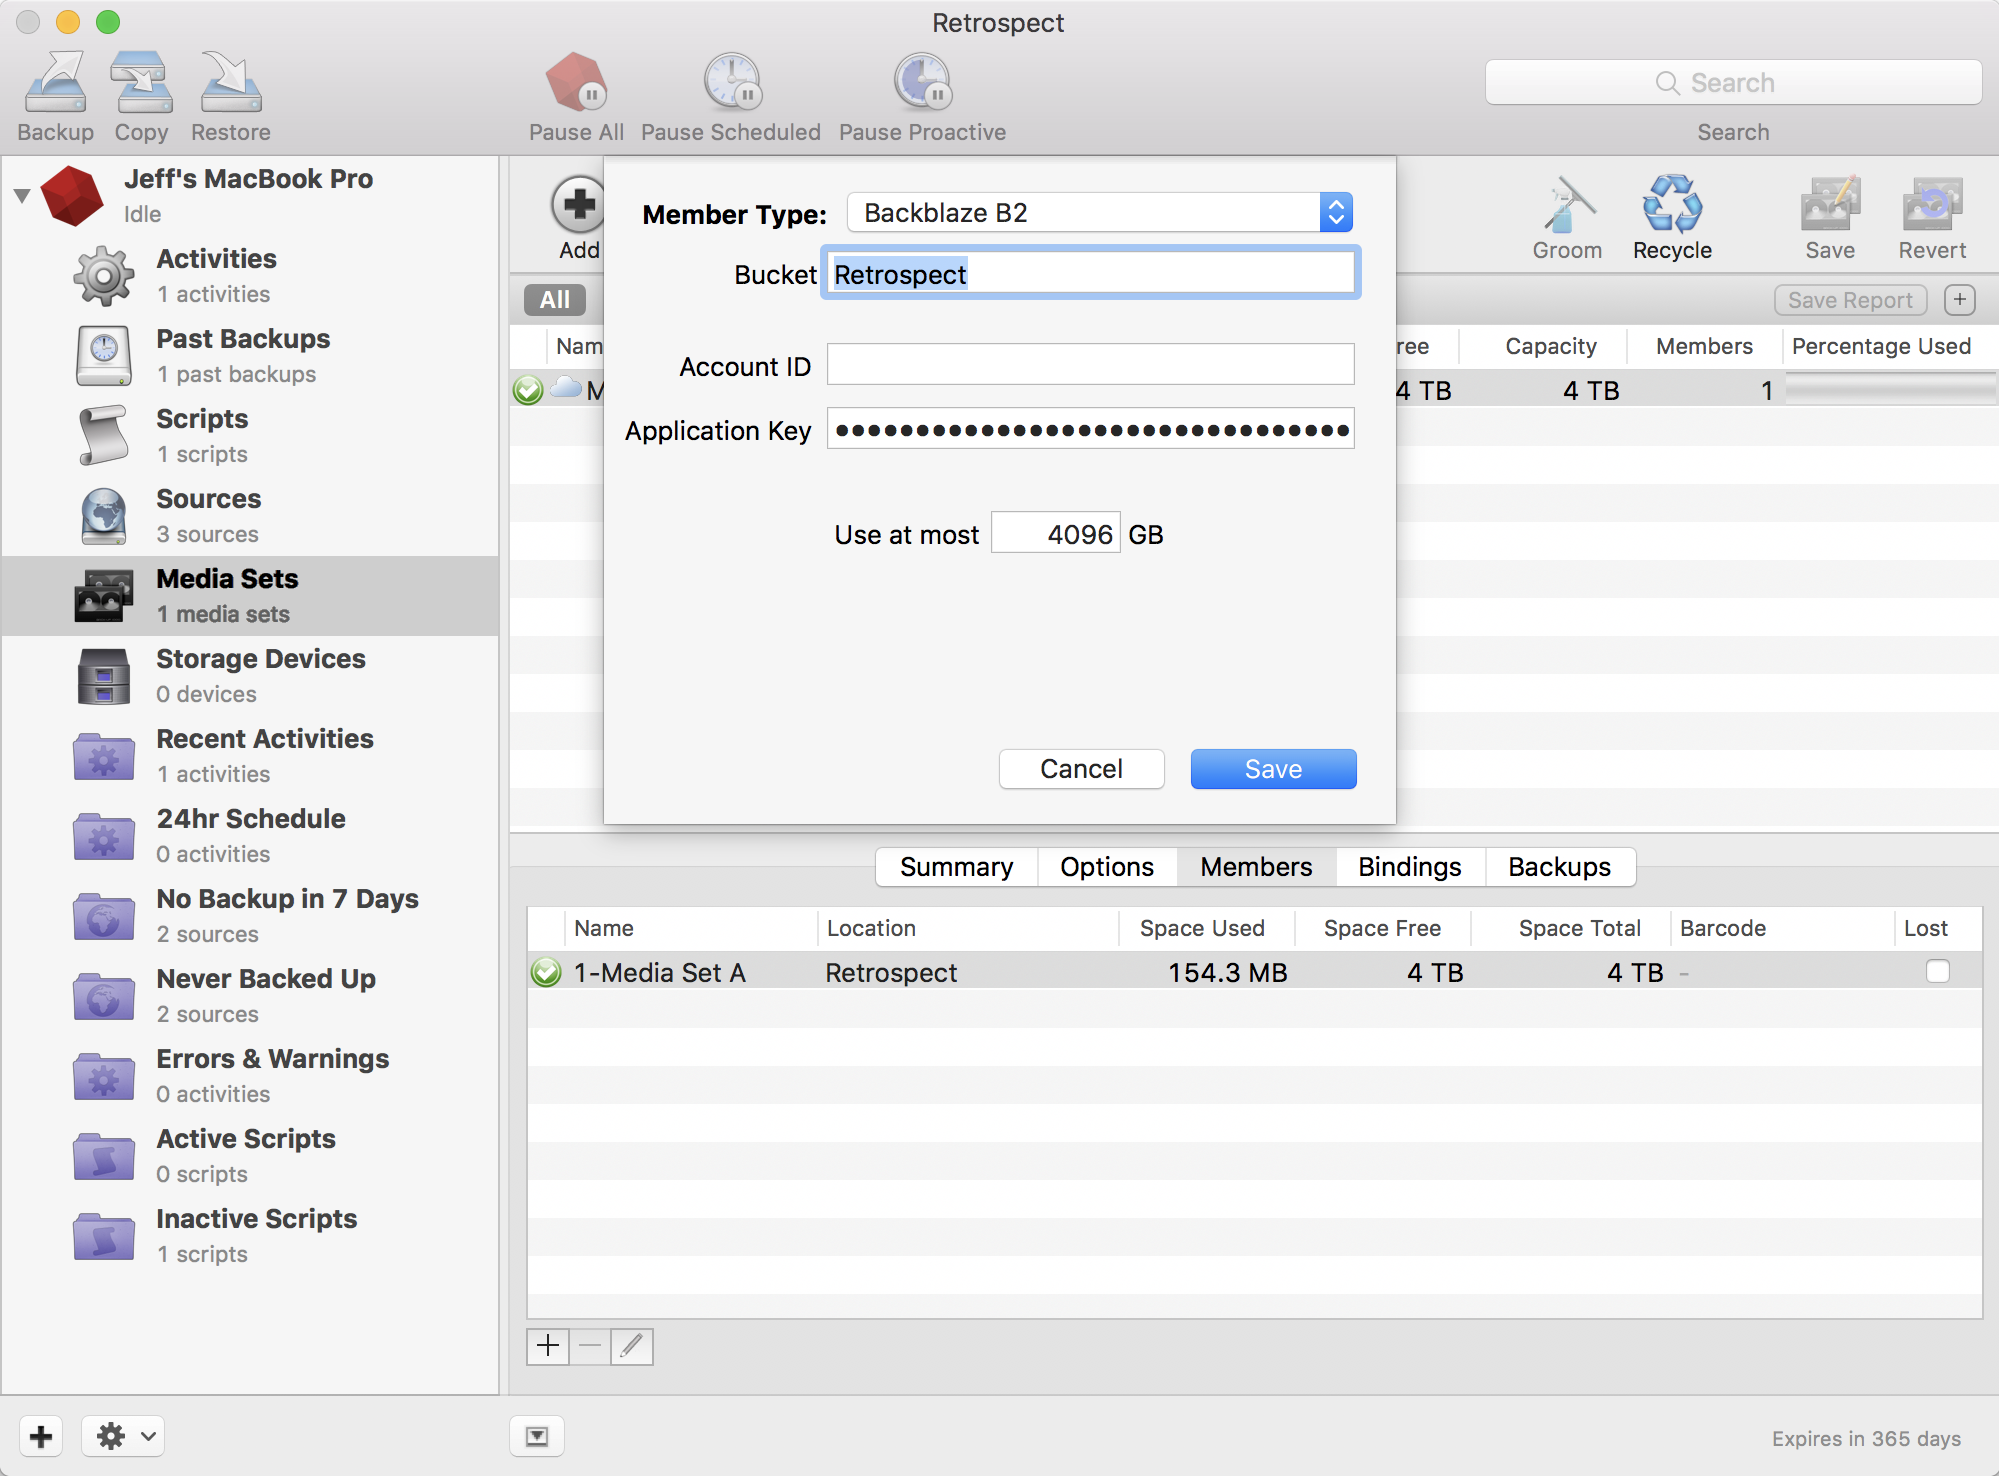 backblaze install mac